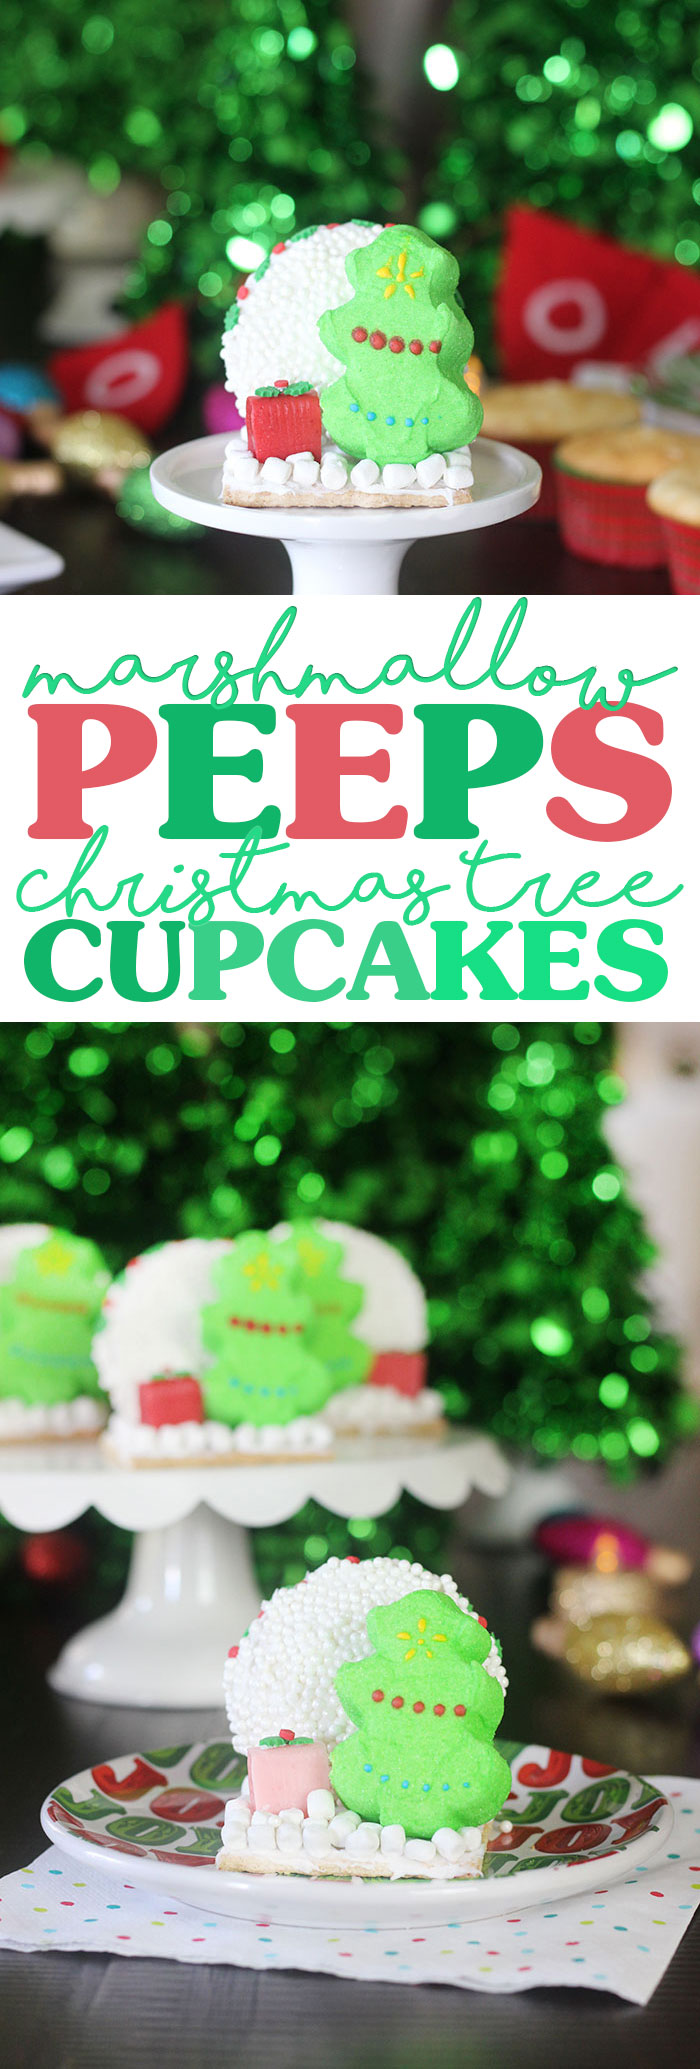 PEEPS Christmas Tree Cupcakes